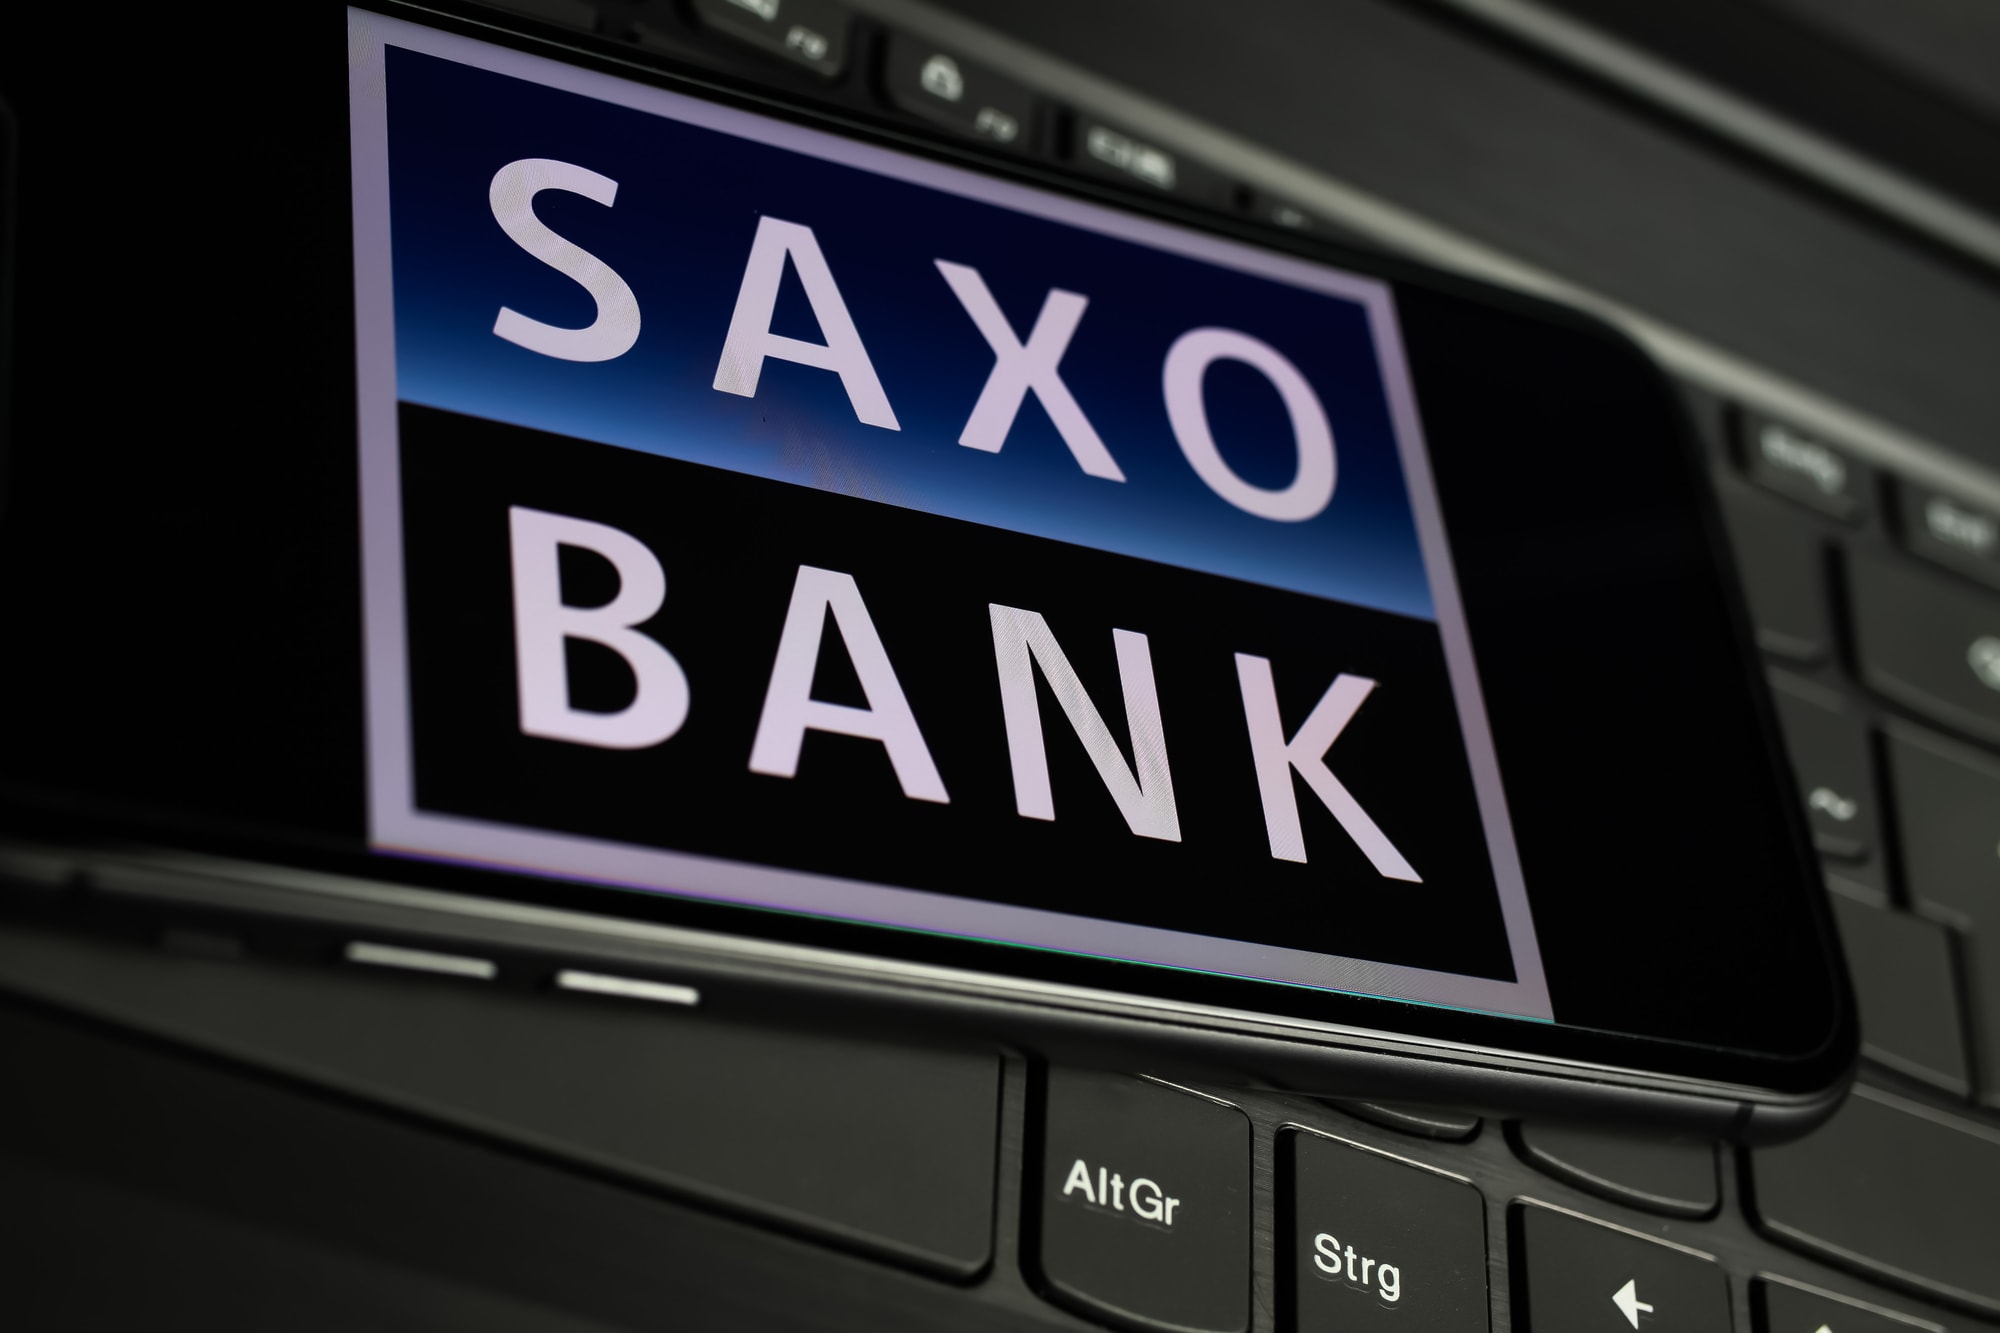 Jaký bude rok 2022? Saxo Bank uvádí těchto 10 nejdůležitějších předpovědí